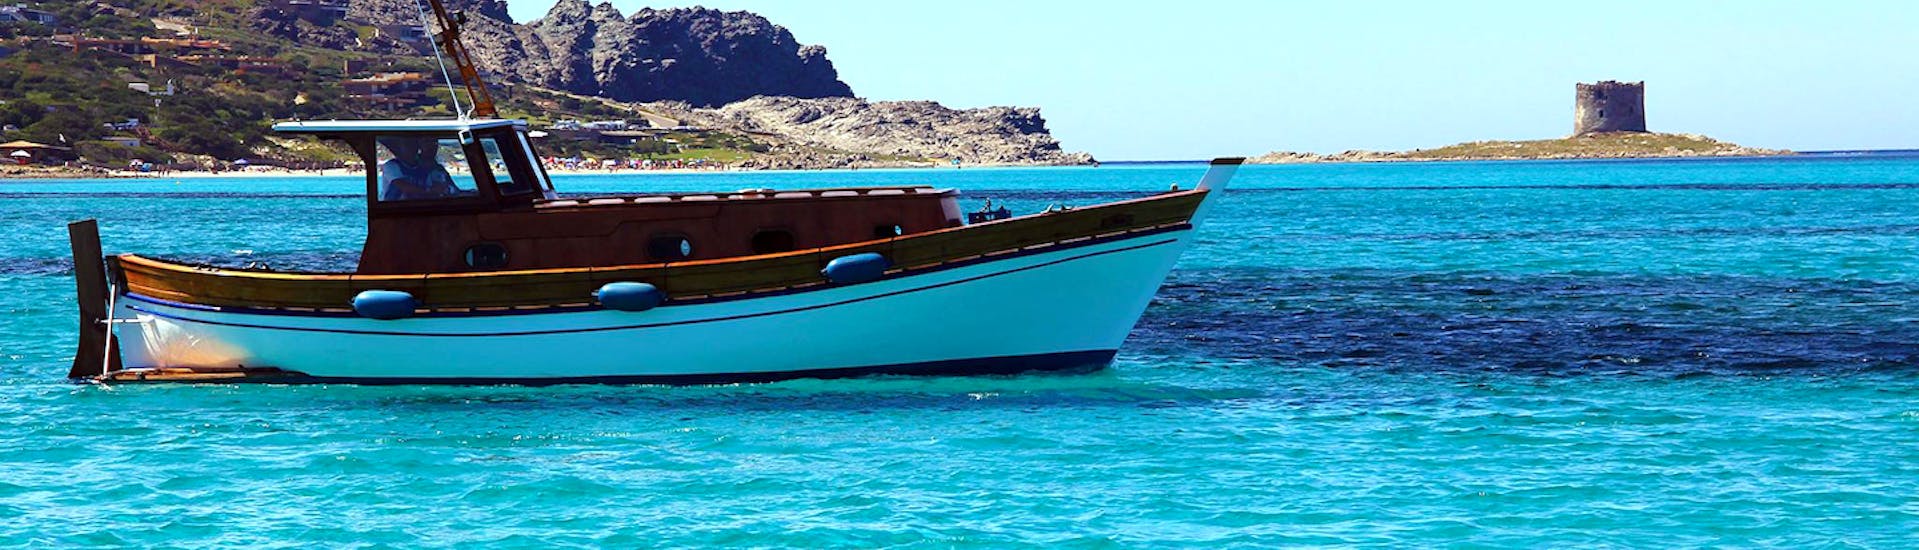 Foto del barco de Onda Blu Asinara tomada durante el viaje en barco privado desde Stintino al Parque Nacional de Asinara con almuerzo.